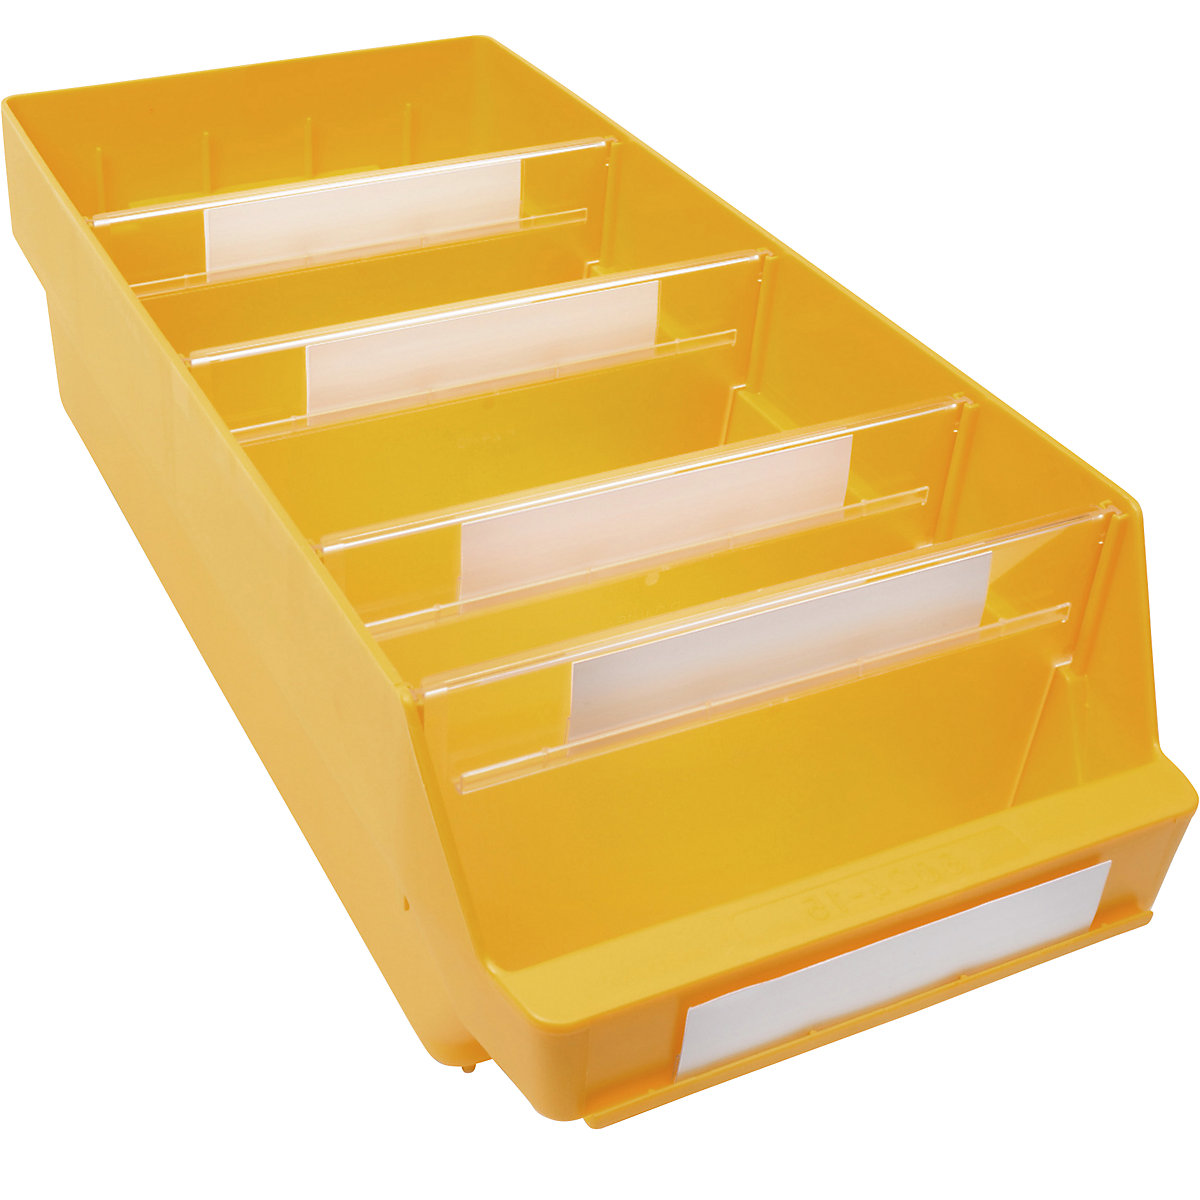 Kutija za regale od polipropilena otpornog na udarce – STEMO, u žutoj boji, DxŠxV 500 x 240 x 150 mm, pak. 10 kom.-4